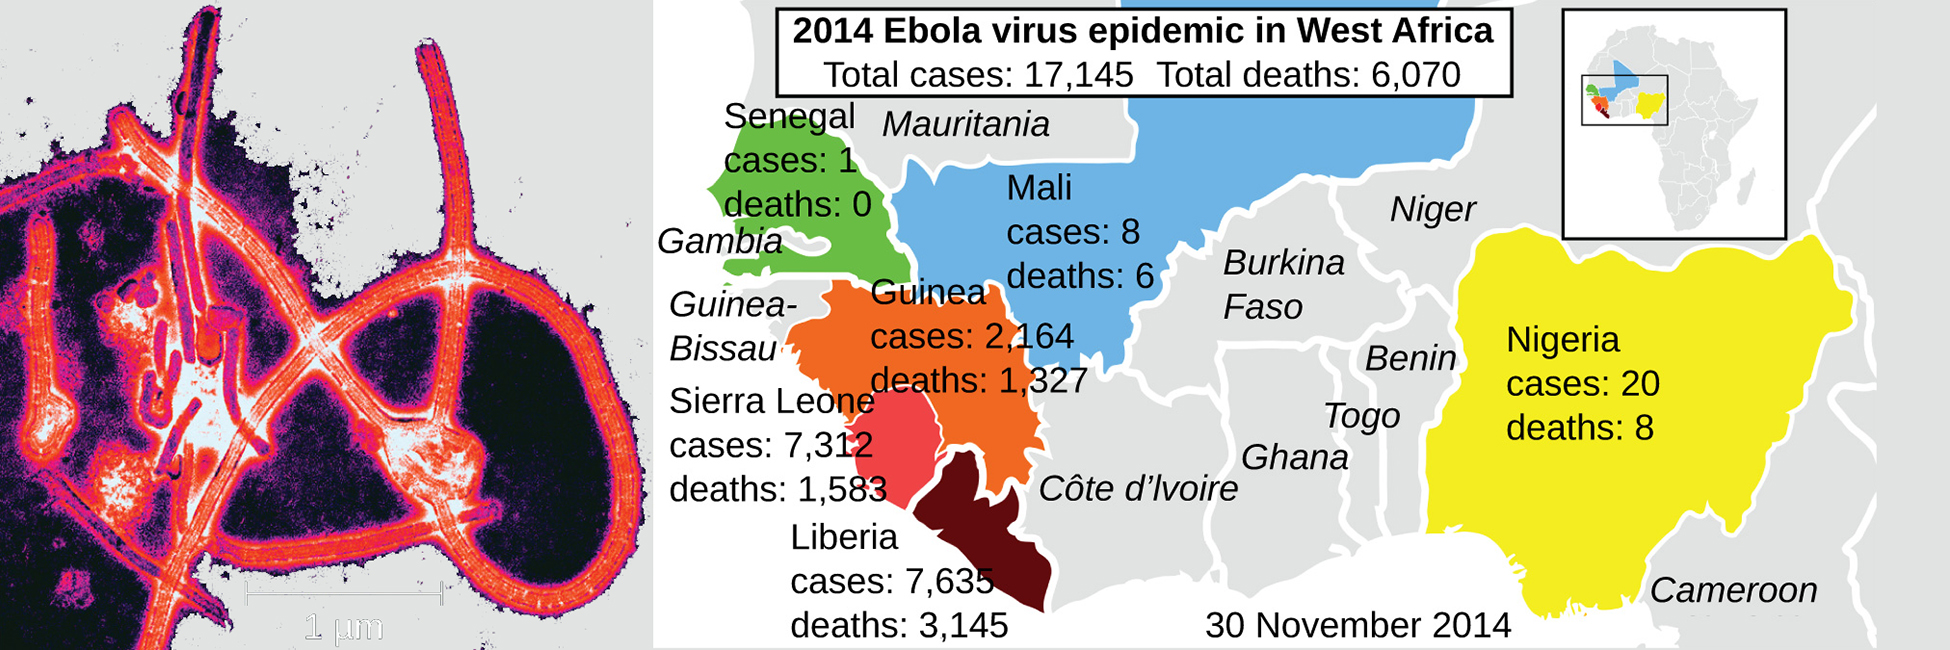 Micrograph ya elektroni inaonyesha virusi vya mstari zimefungwa kwenye muundo wa umbo la delta. Ramani inaonyesha magonjwa ya Ebola 2014 katika Afrika Magharibi. Kulikuwa na kesi 17,124 jumla na vifo 6,070 jumla. Senegal ilikuwa na kesi 1 na hakuna vifo. Mali ilikuwa na kesi 8 na vifo 6. Guinea ilikuwa na kesi 2,164 na vifo 1,326, Sierra Leone ilikuwa na kesi 7,312 na vifo 1,583, Liberia ilikuwa na kesi 7,635 na vifo 3,145. Nigeria ilikuwa na kesi 20 na vifo 8.